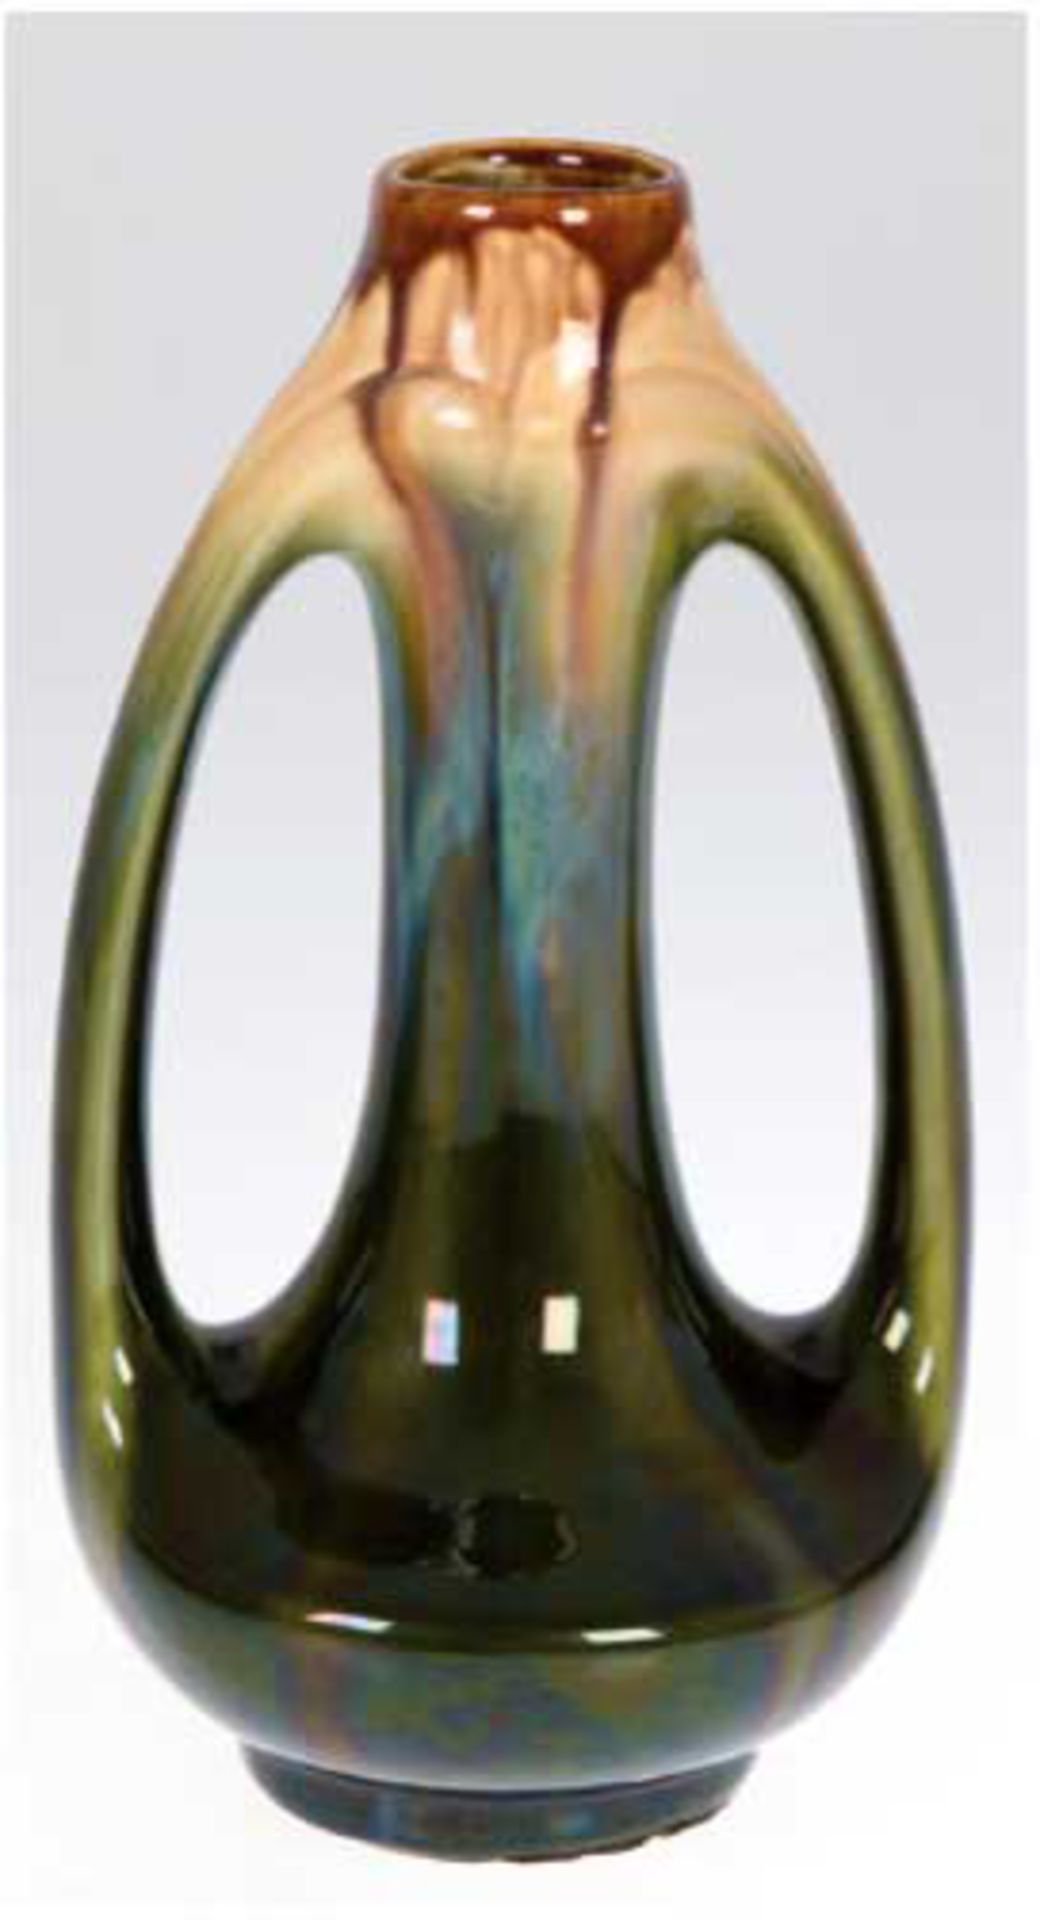 Jugendstil-Vase, um 1925, Keramik, grün, gelb und braun glasiert, H. 23 cm